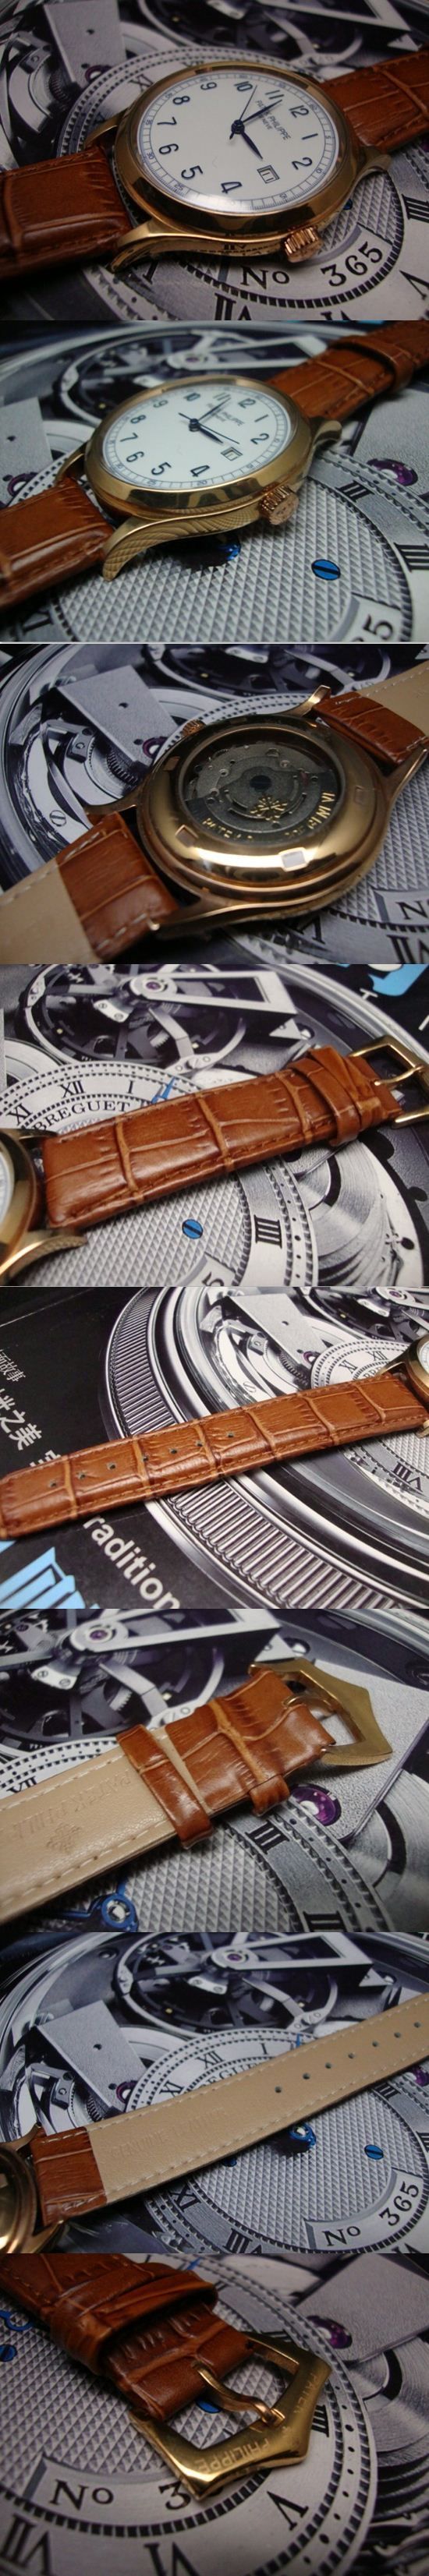 おしゃれなブランド時計がPATEK PHILIPPE-パテック フィリップ腕時計 パテック フィリップ 男/女腕時計 PATEK-PHILIPPE-N-009A を提供します.